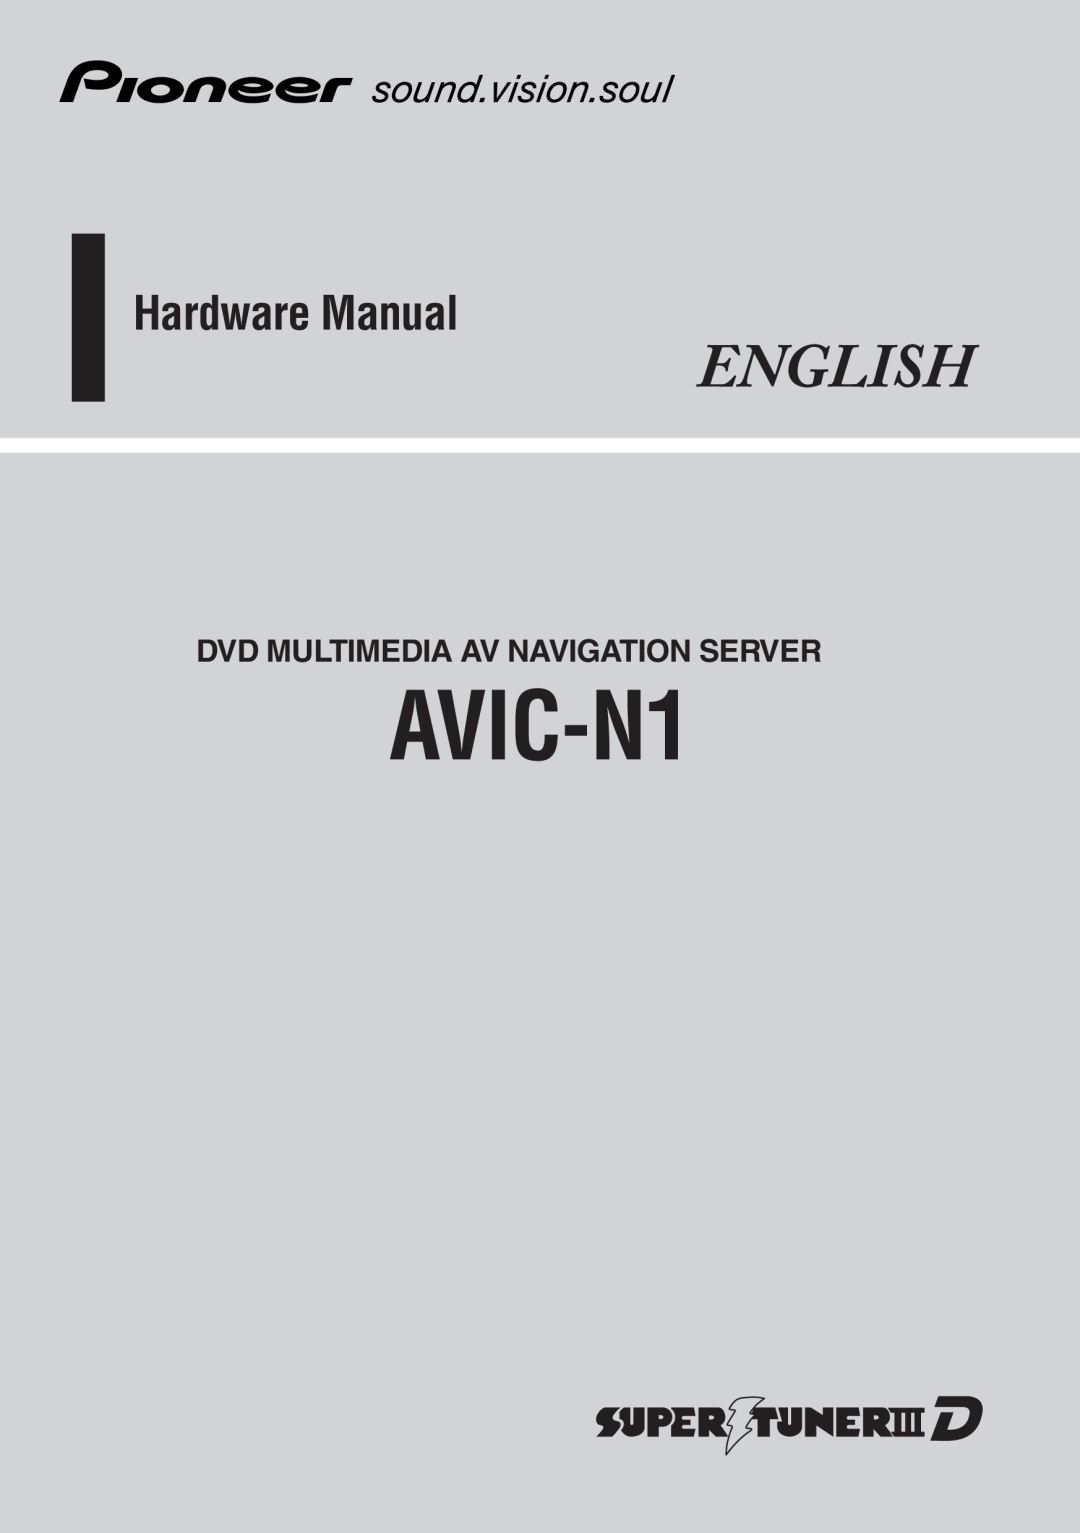 Pioneer AVIC-N1 manual English, Hardware Manual, Dvd Multimedia Av Navigation Server 